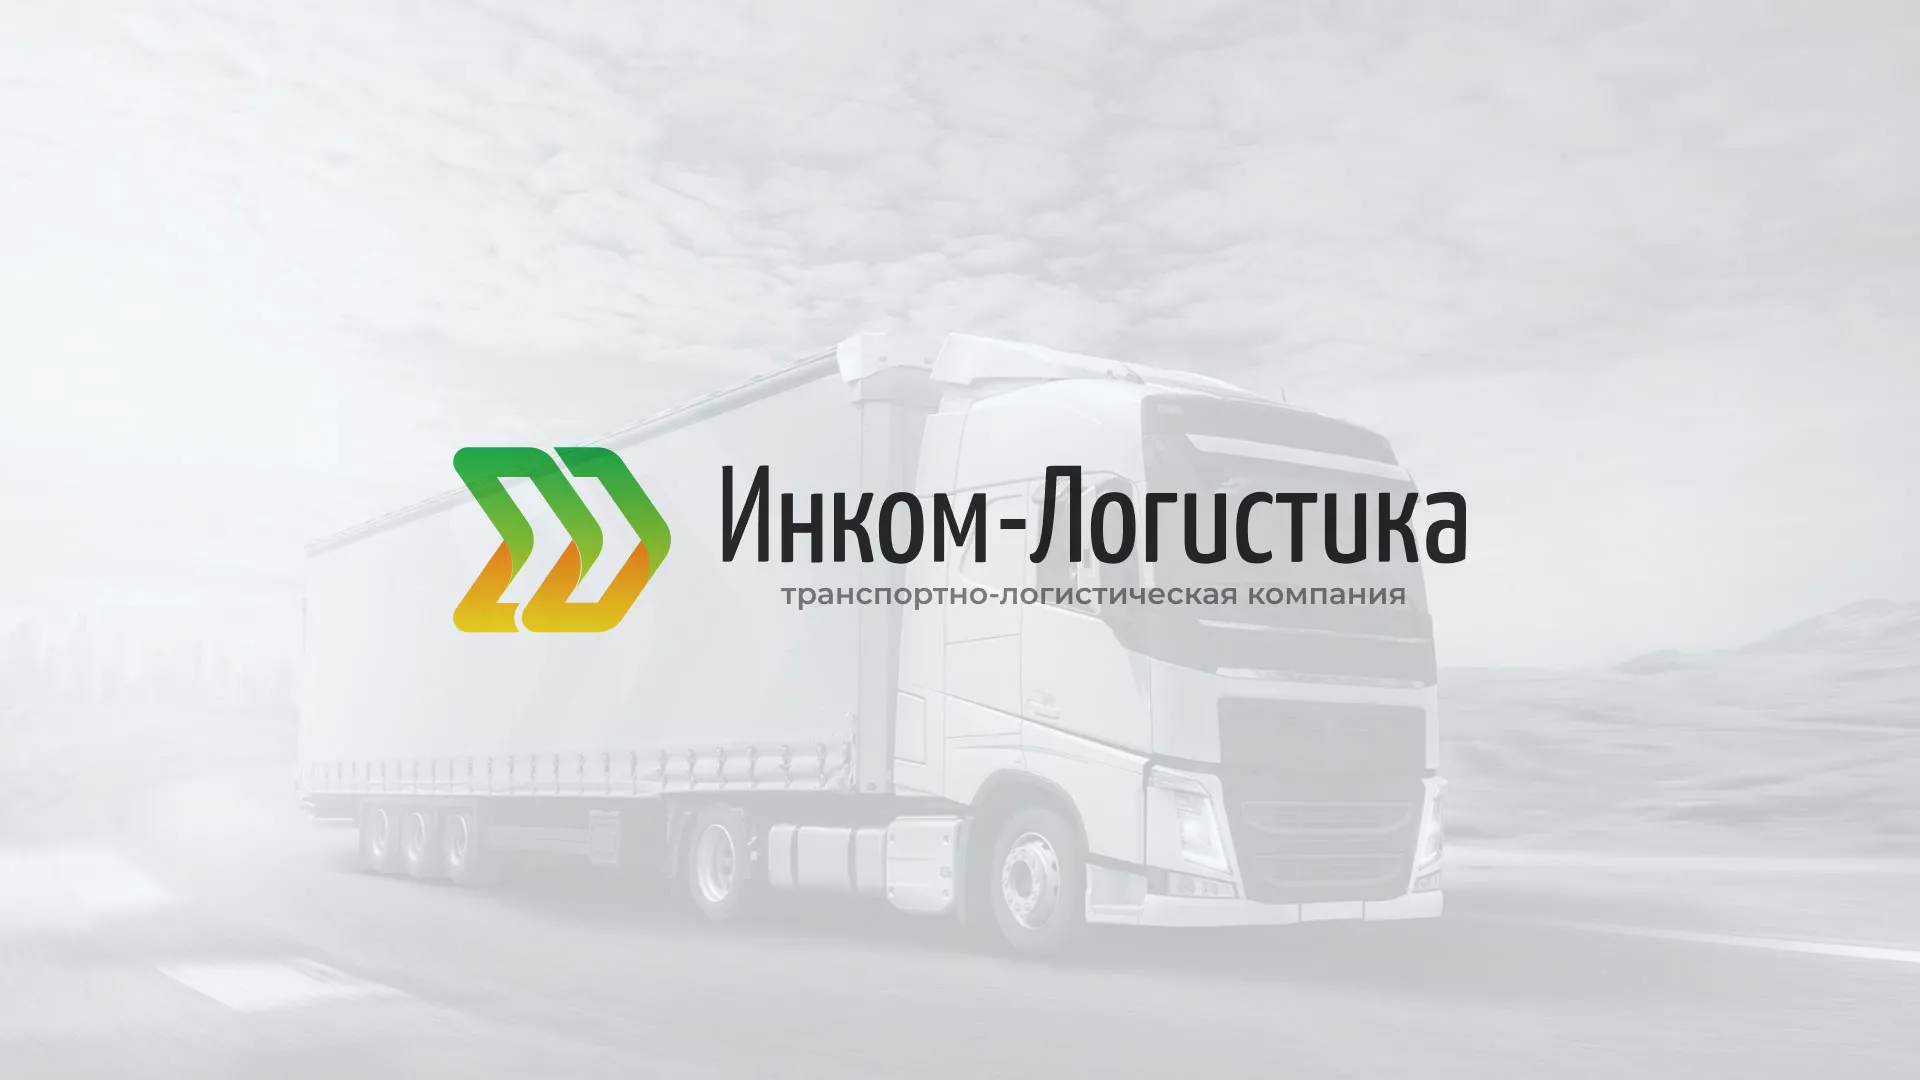 Разработка логотипа и сайта компании «Инком-Логистика» в Астрахани